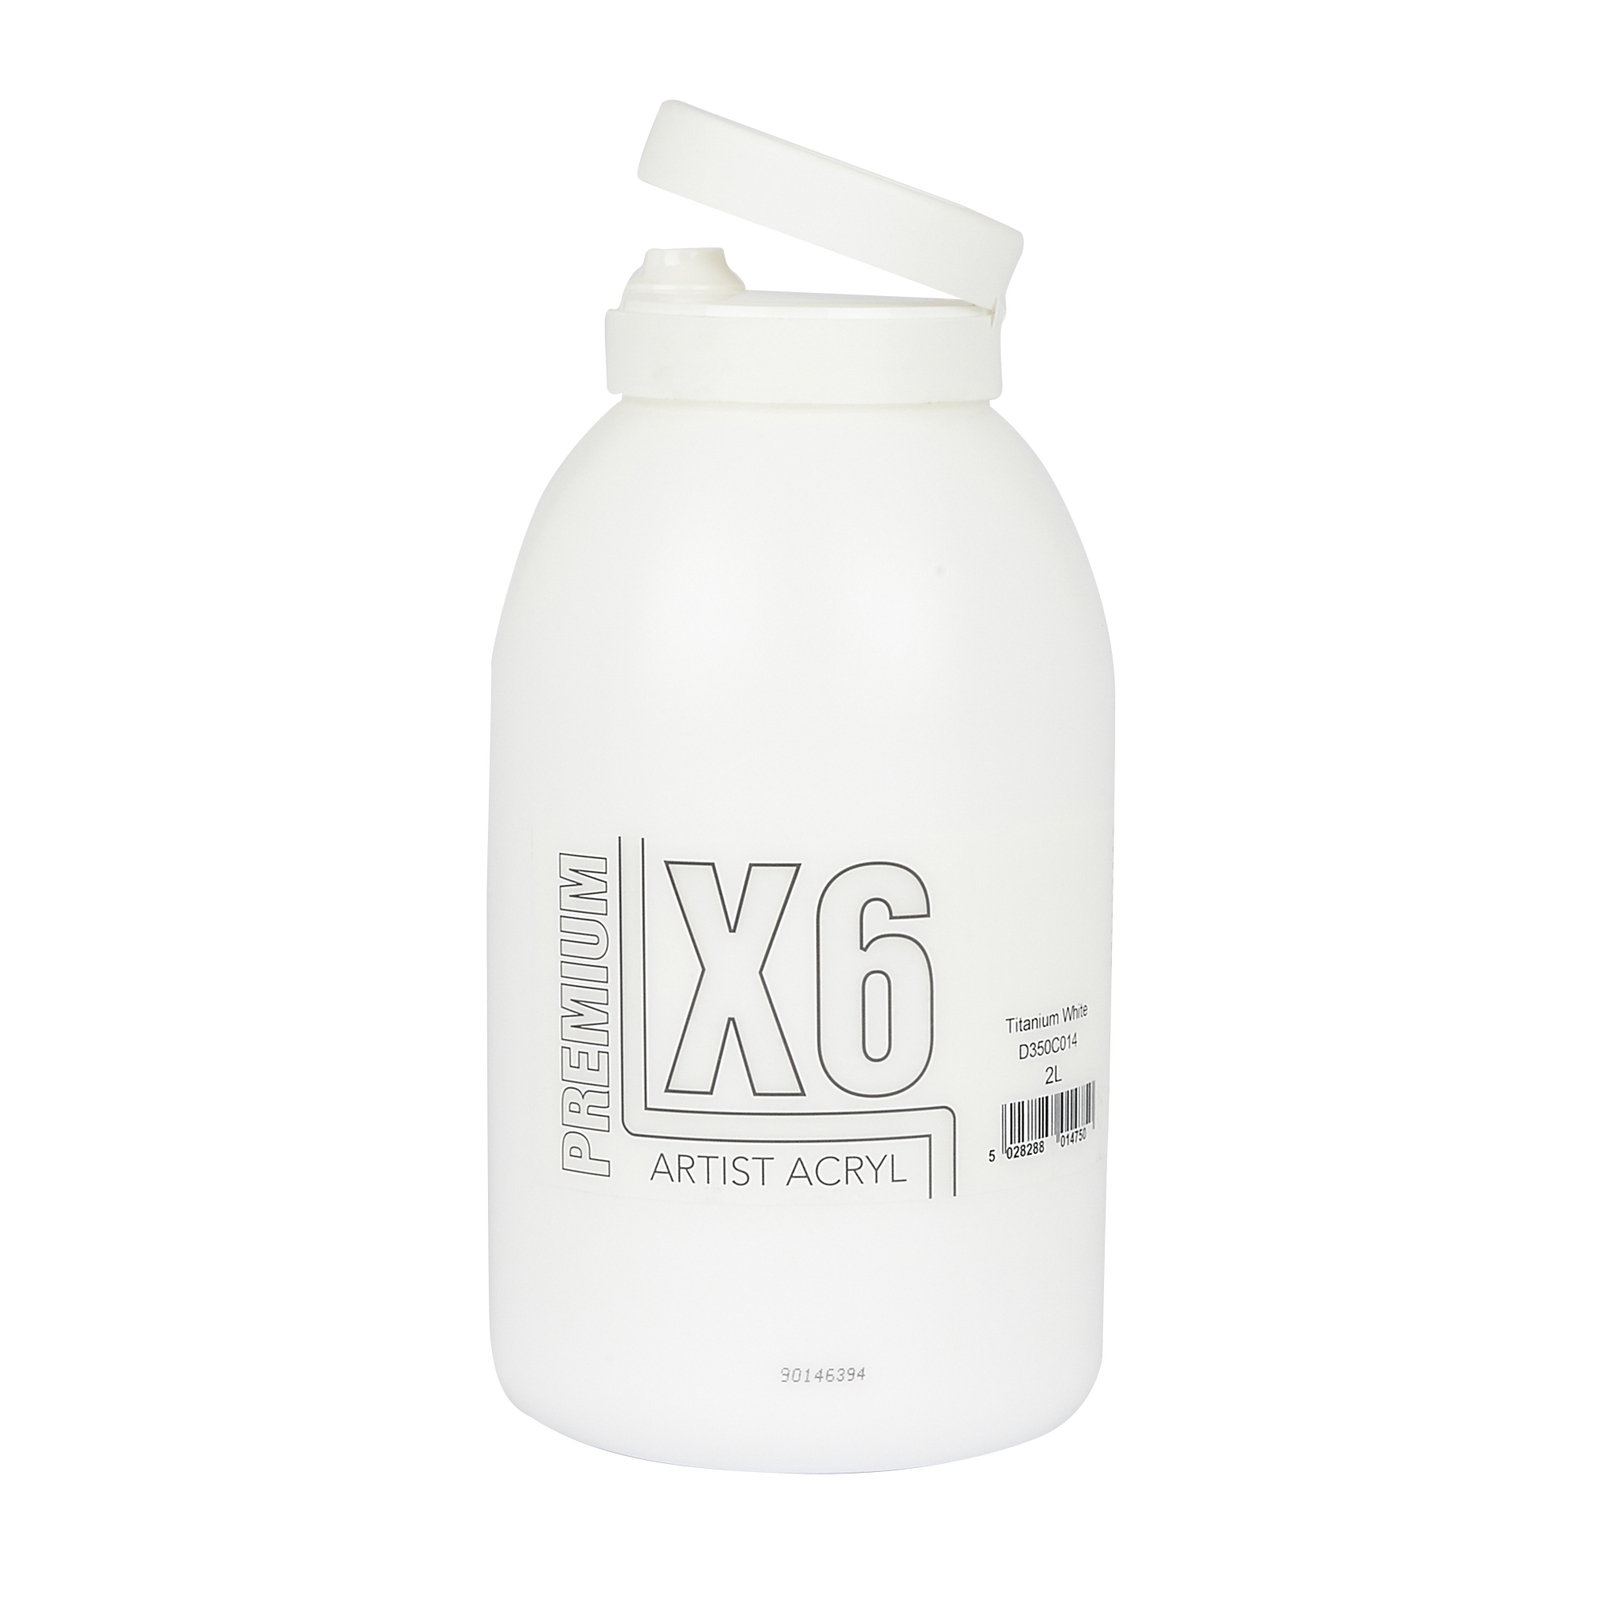 Specialist Crafts X6 Premium Titanium White Acryl/Acrylic Paint - 2 Litre - Each